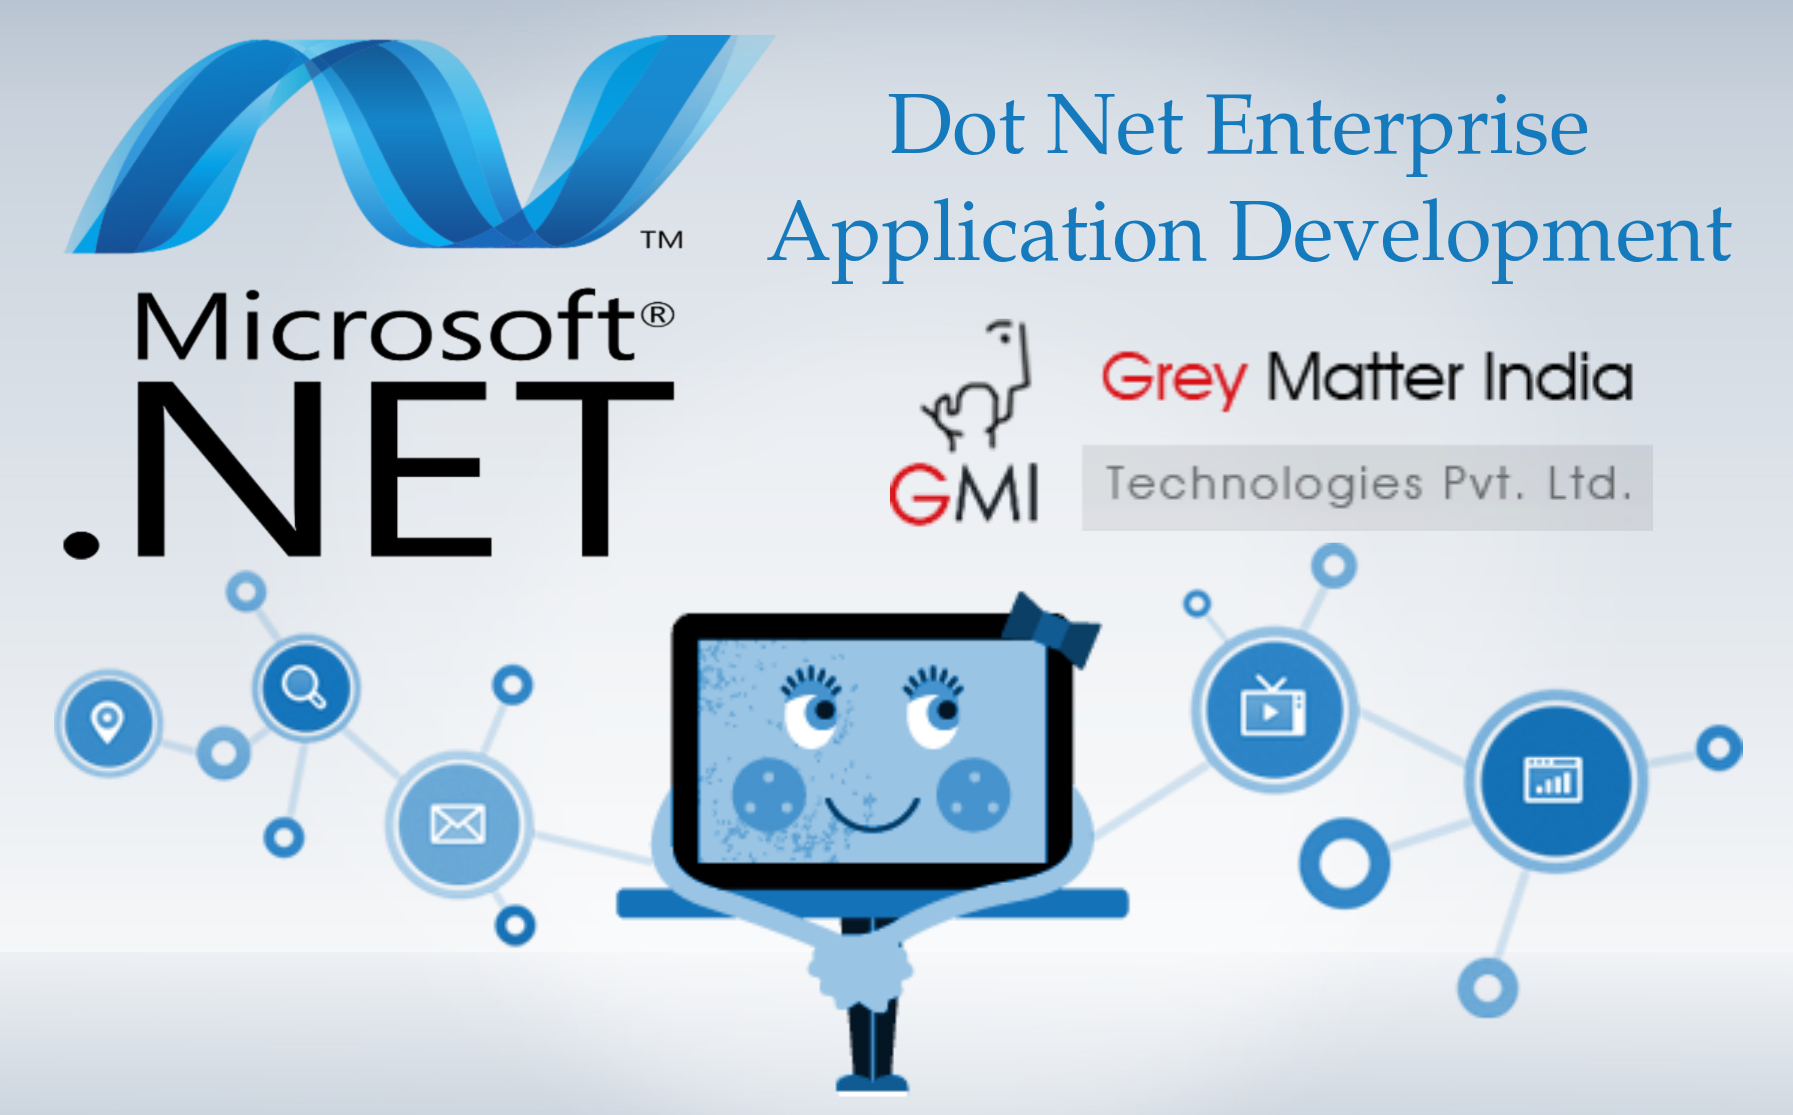 Dot Net Application Development